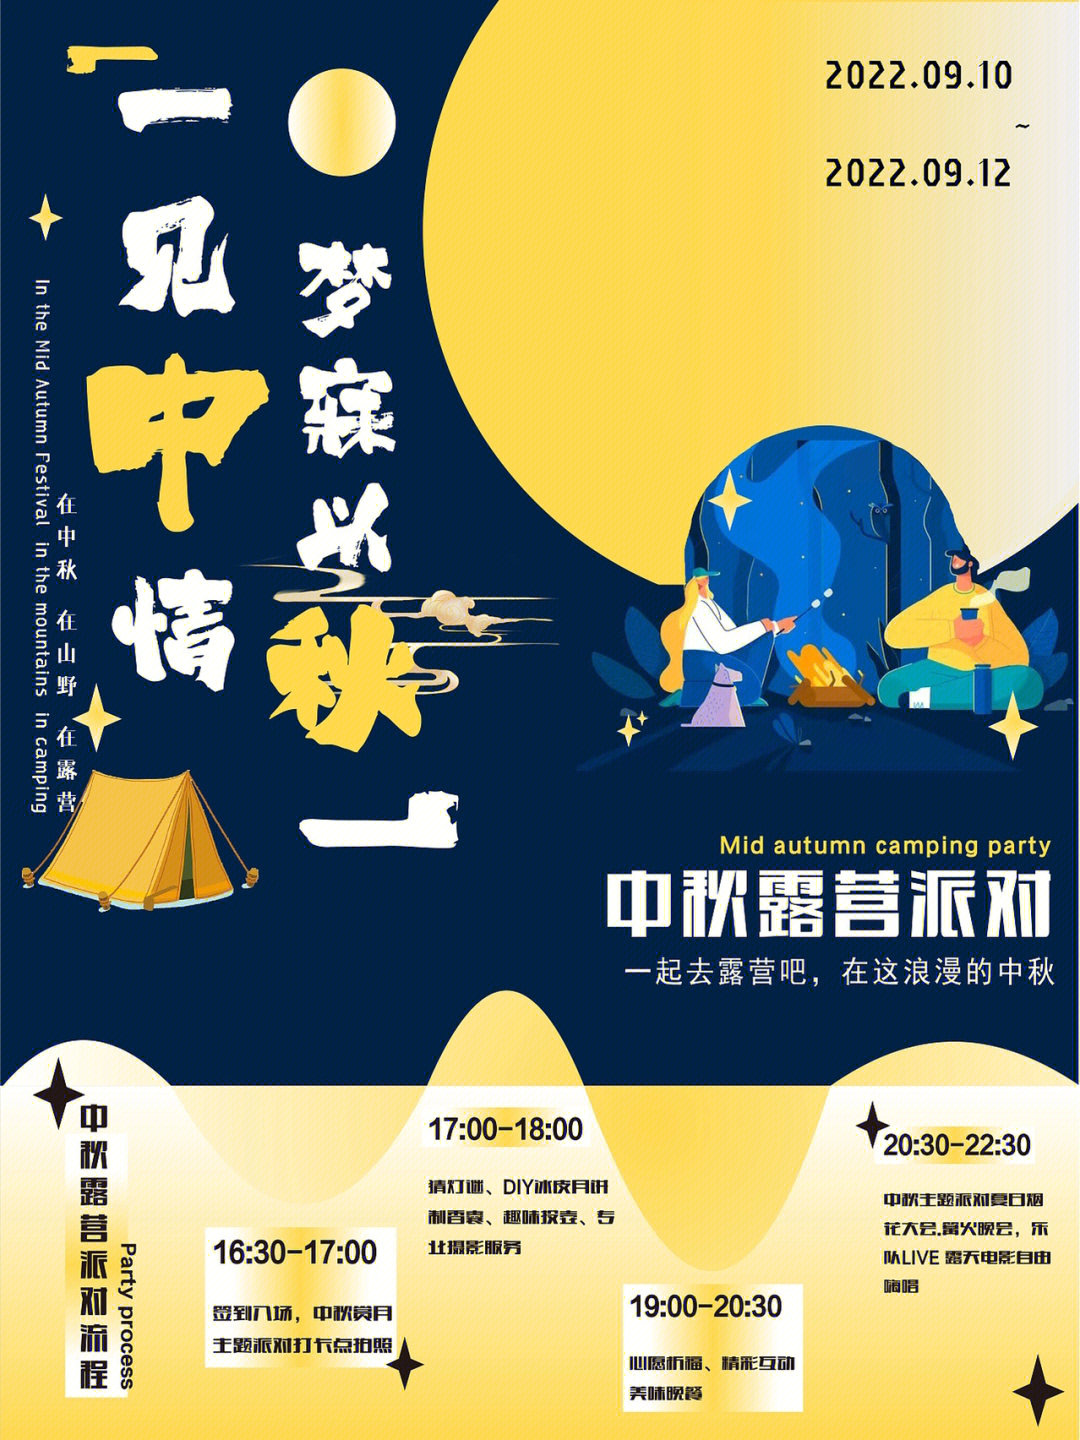 以一见中情 梦寐以秋为主题活动  中秋节是中国的传统节日而露营是